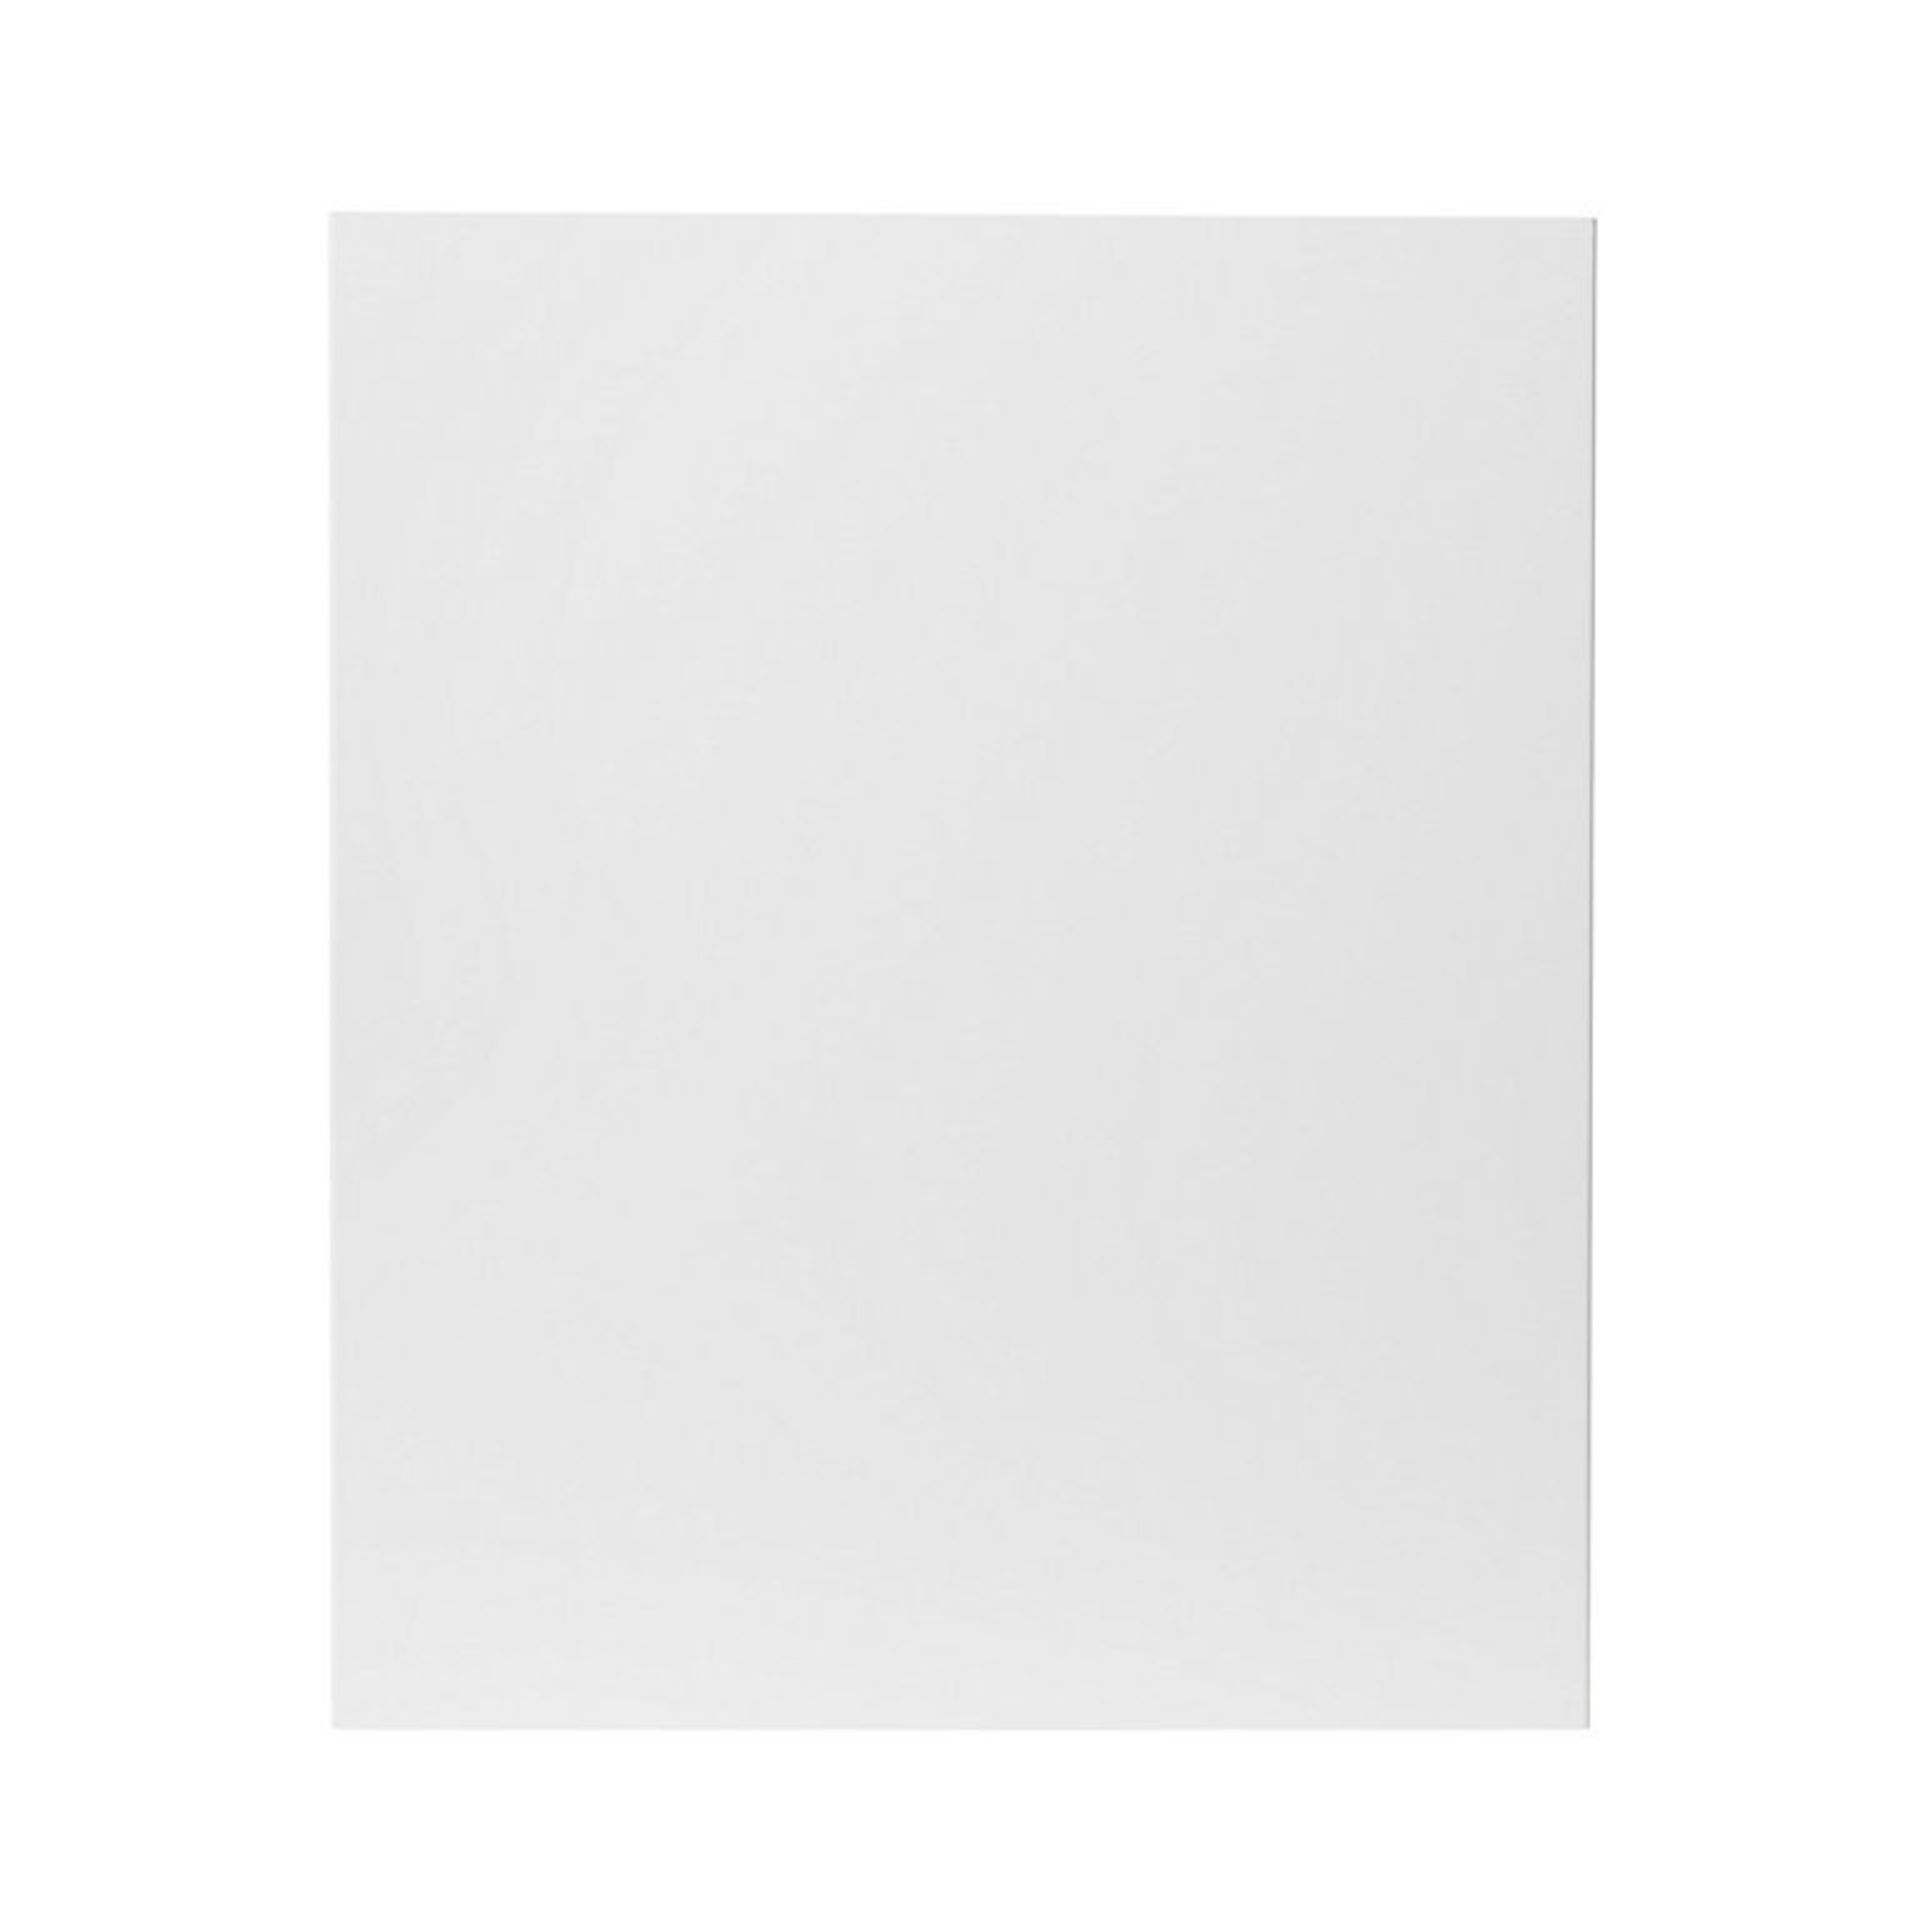 GoodHome Stevia Gloss white slab Highline Cabinet door (W)600mm (H)715mm (T)18mm - ER45